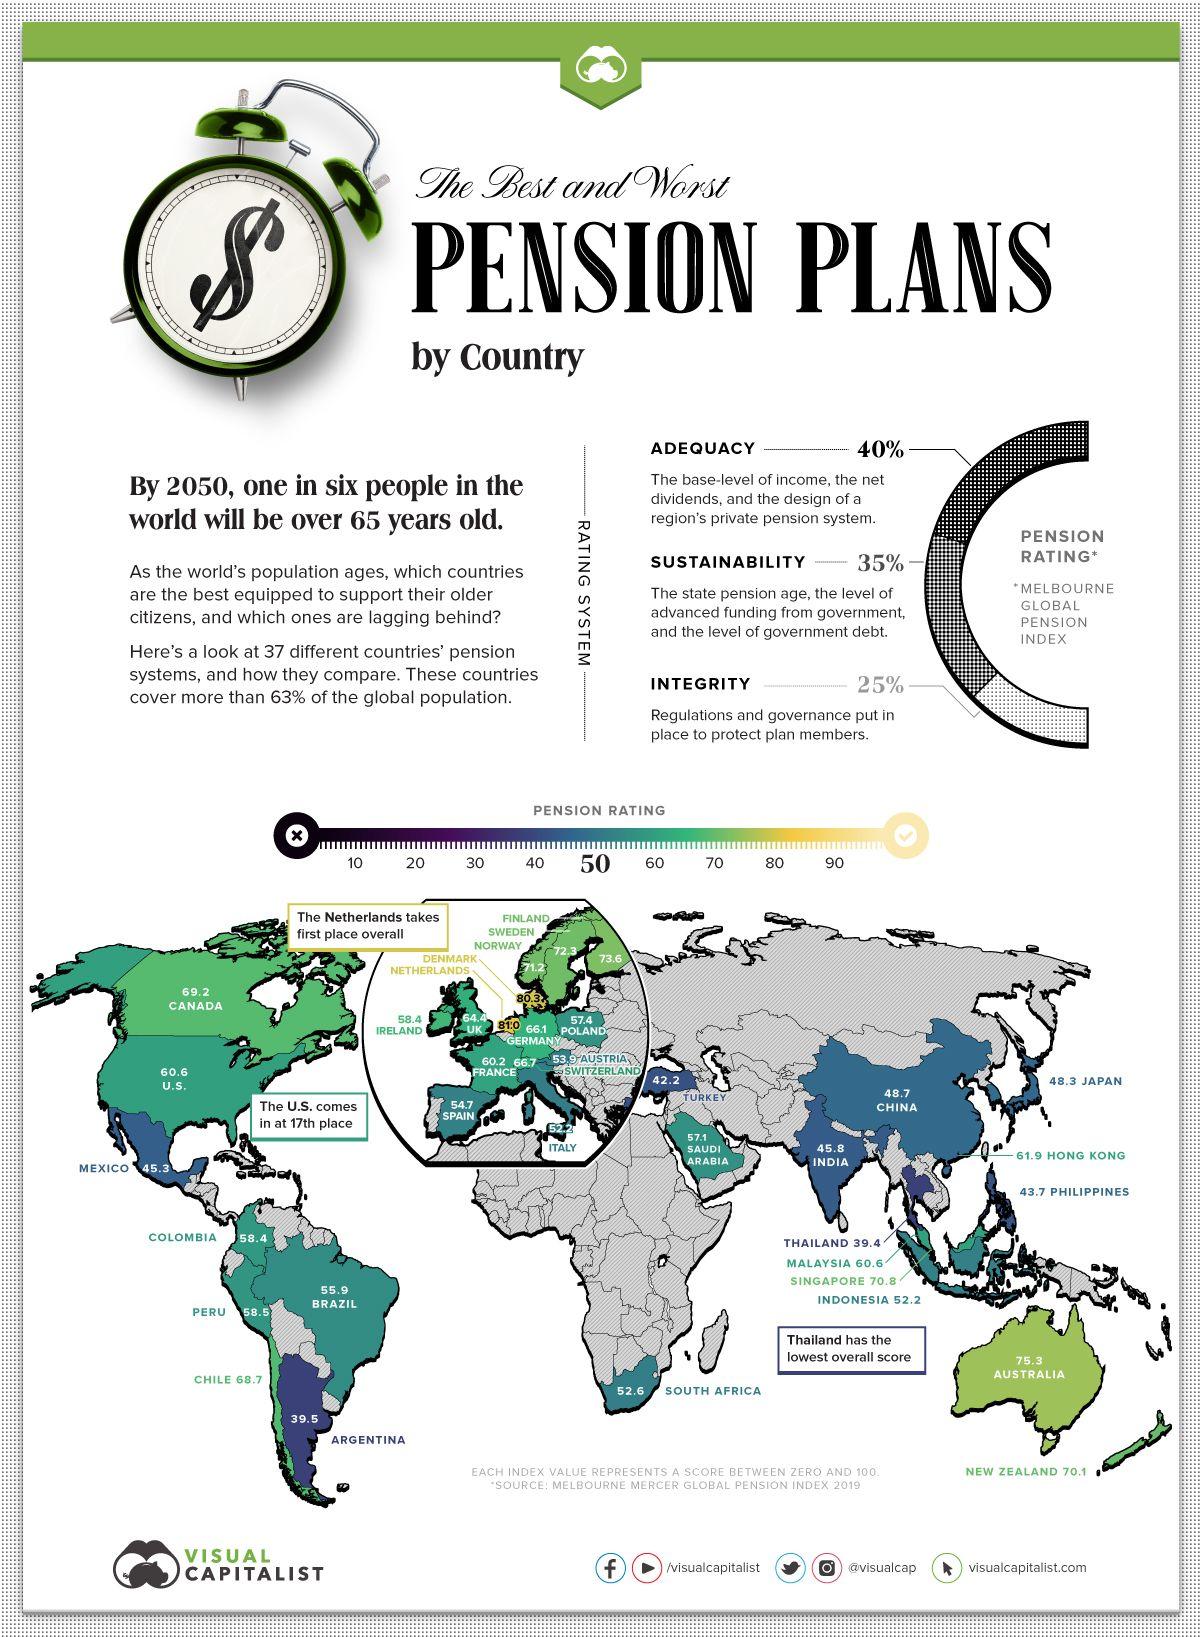 En Visual Capitalist han analizado los sistemas de pensiones de 37 países